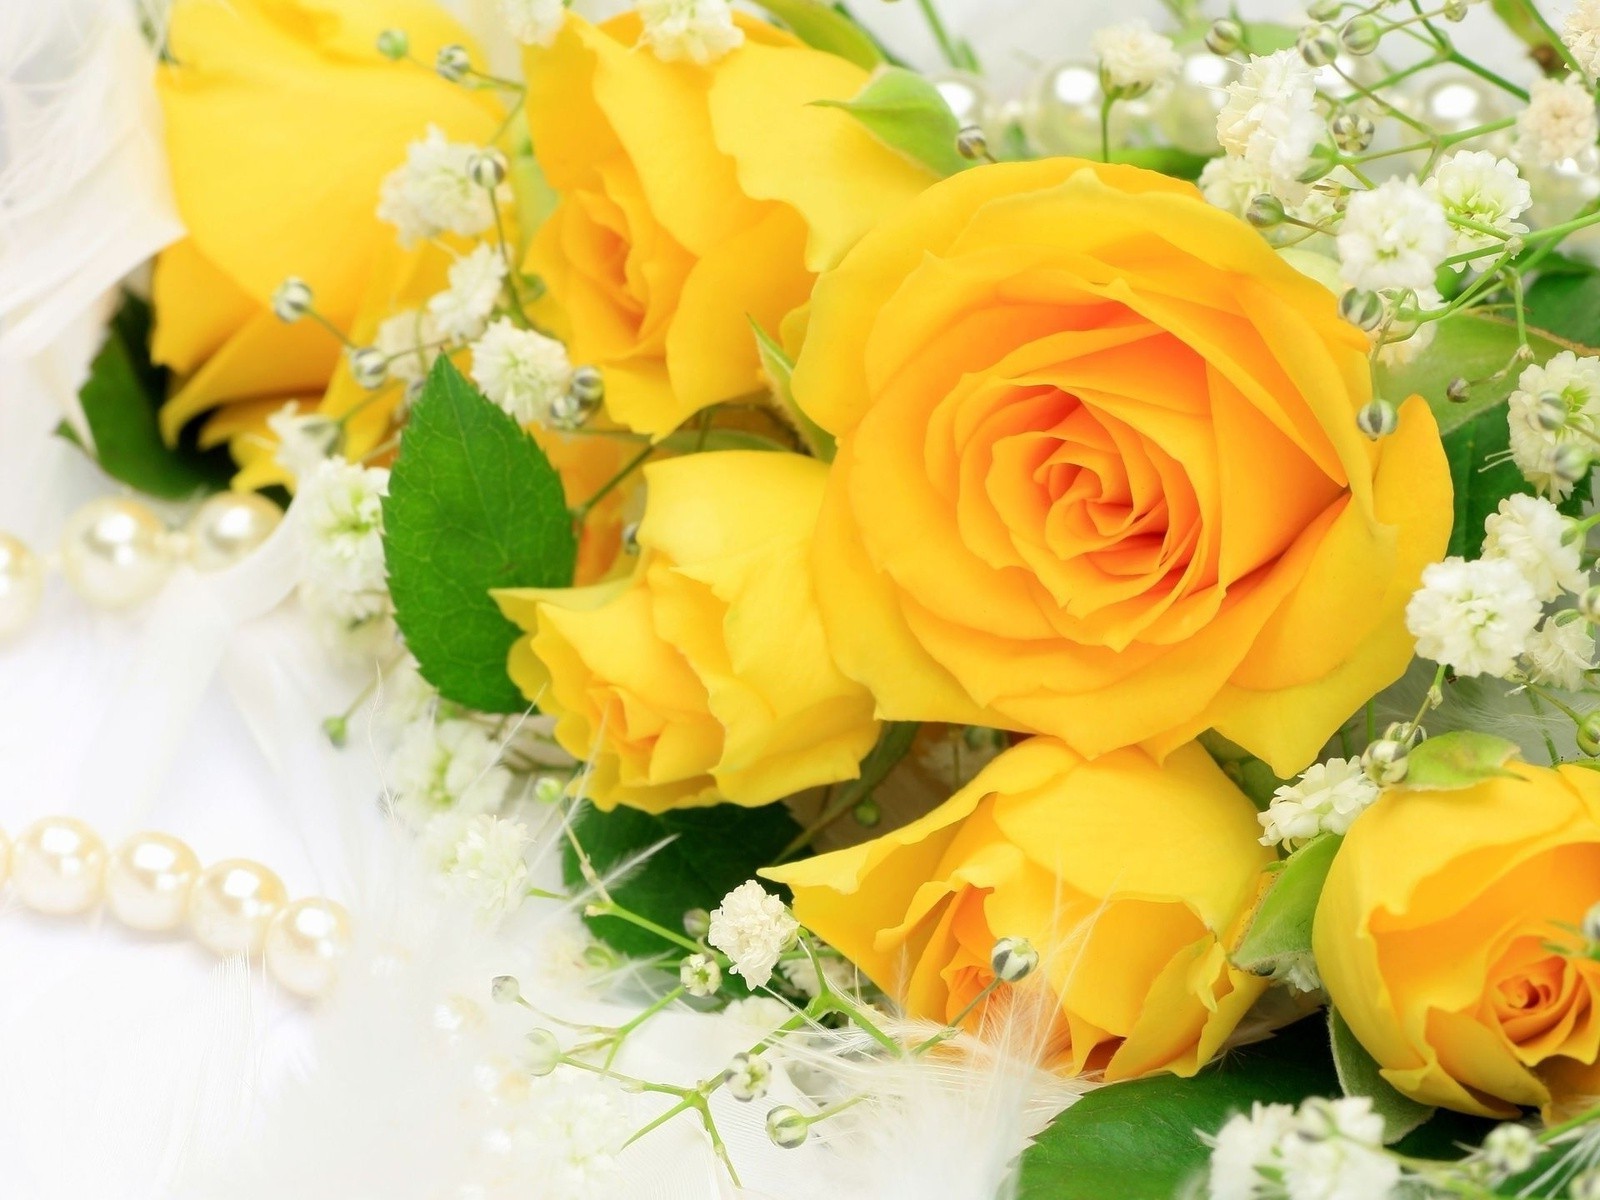 букет цветов свадьба букет роза цветок невеста любовь романтика брак для новобрачных цветочные участие романтический праздник лепесток жених подарок цветочная композиция лист украшения юбилей